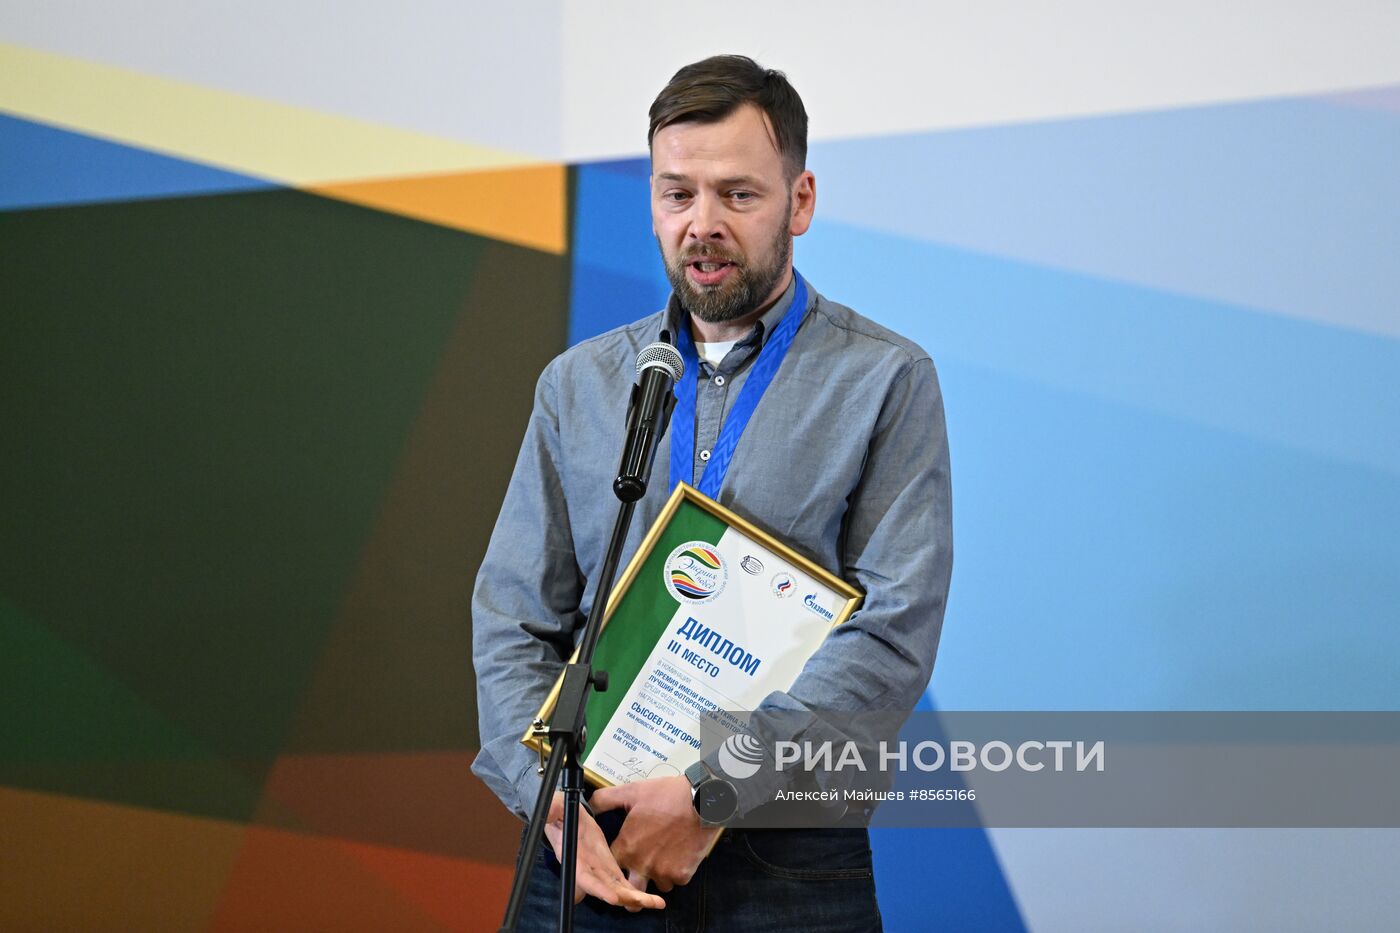 Фотографы медиагруппы "Россия сегодня" завоевали награды конкурса "Энергия побед"